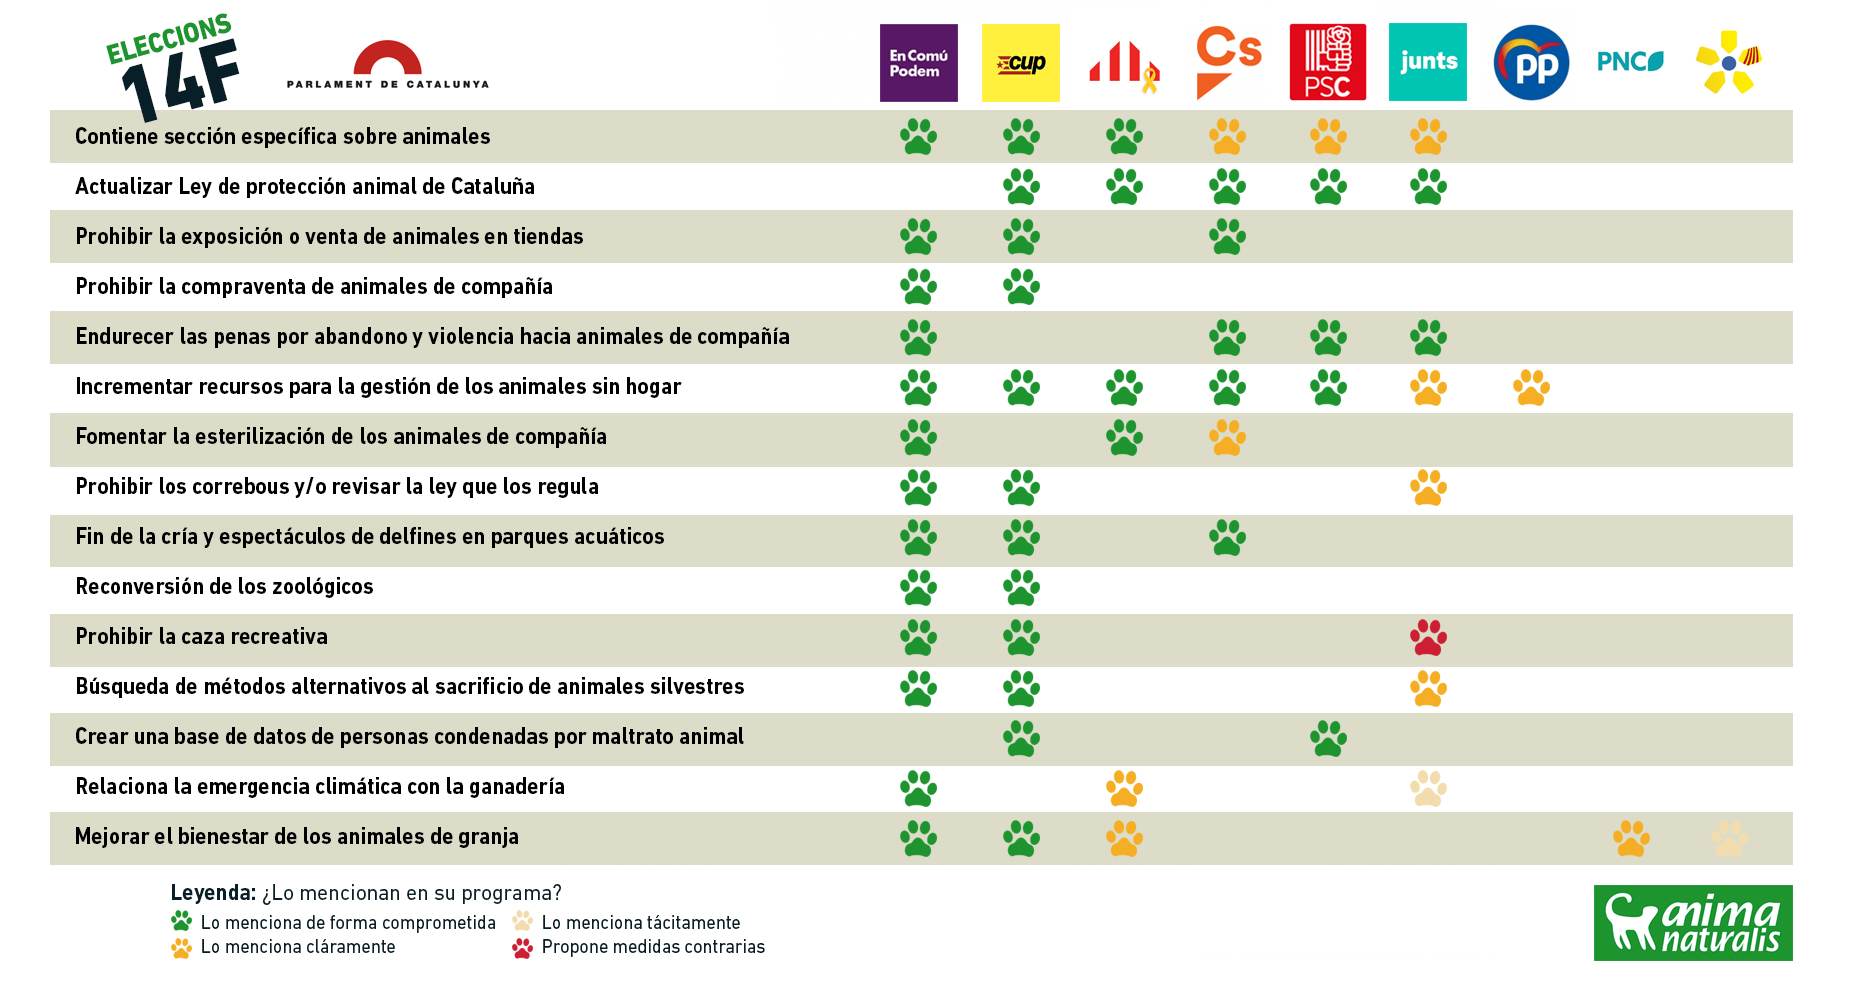 Analitzem les propostes de protecció animal per a les eleccions a Parlament de Catalunya 14F 